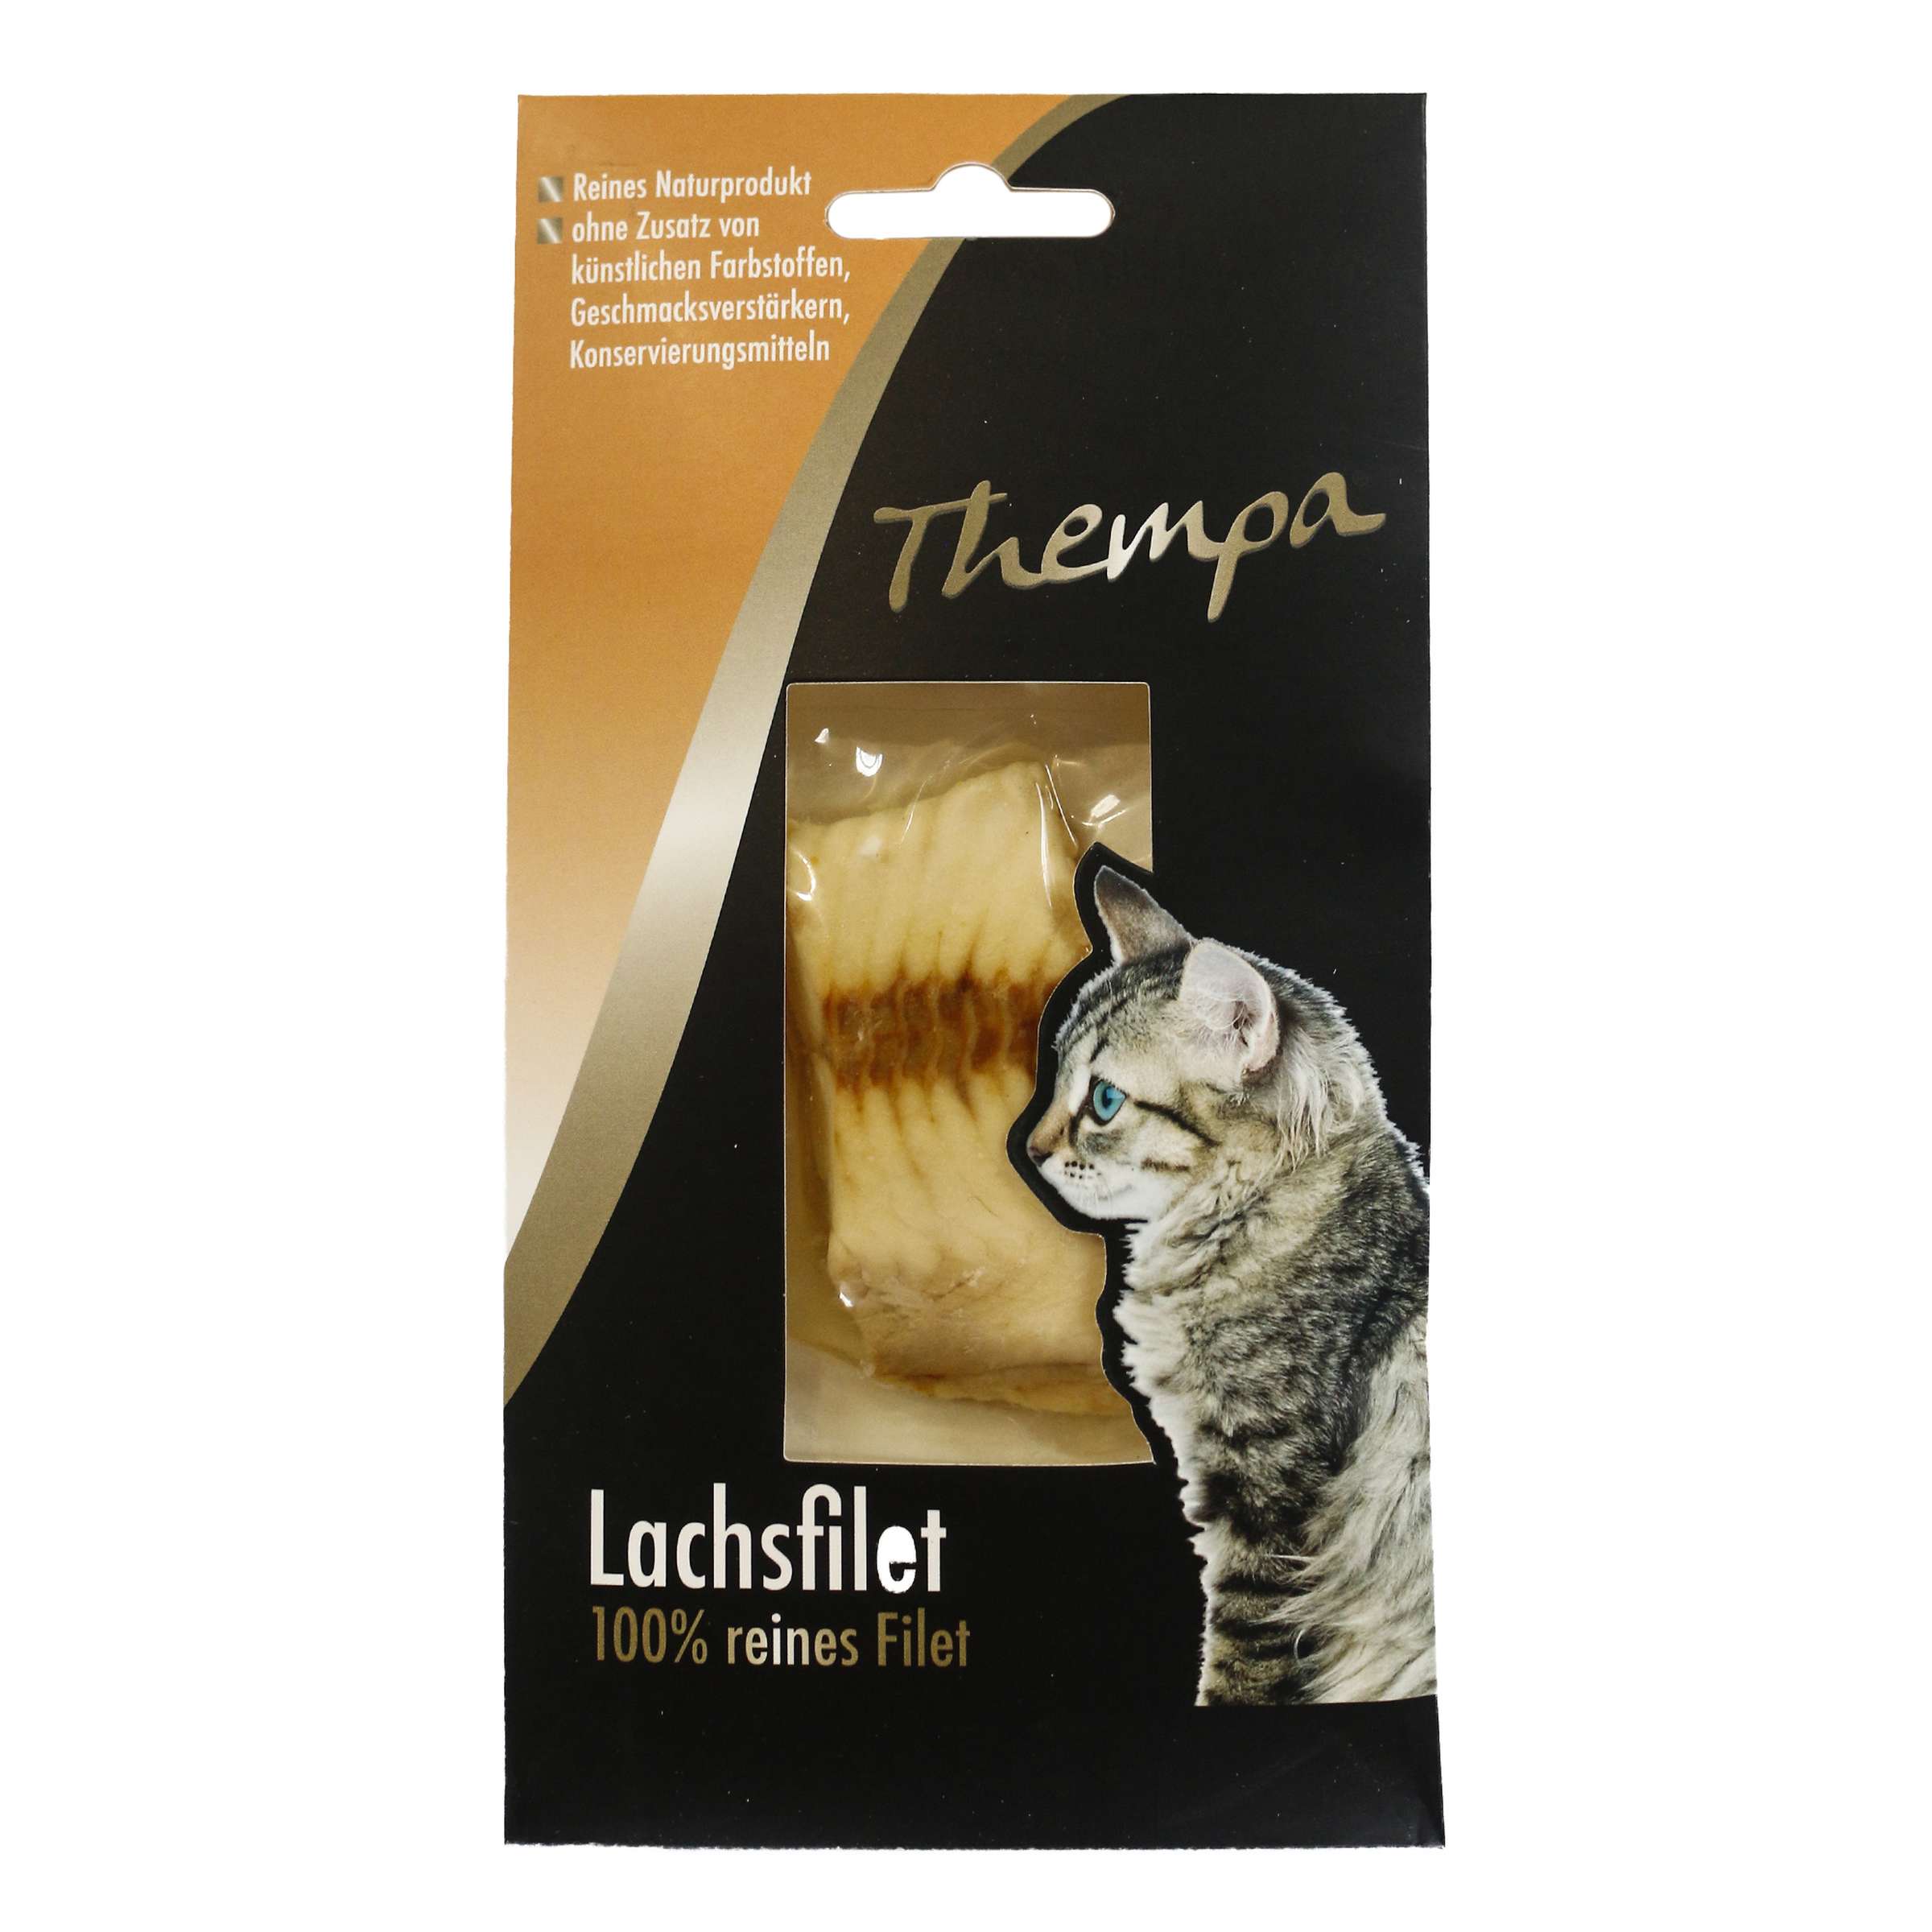 Thempa Lachsfilet für Katzen 100% reinem Filet 30g